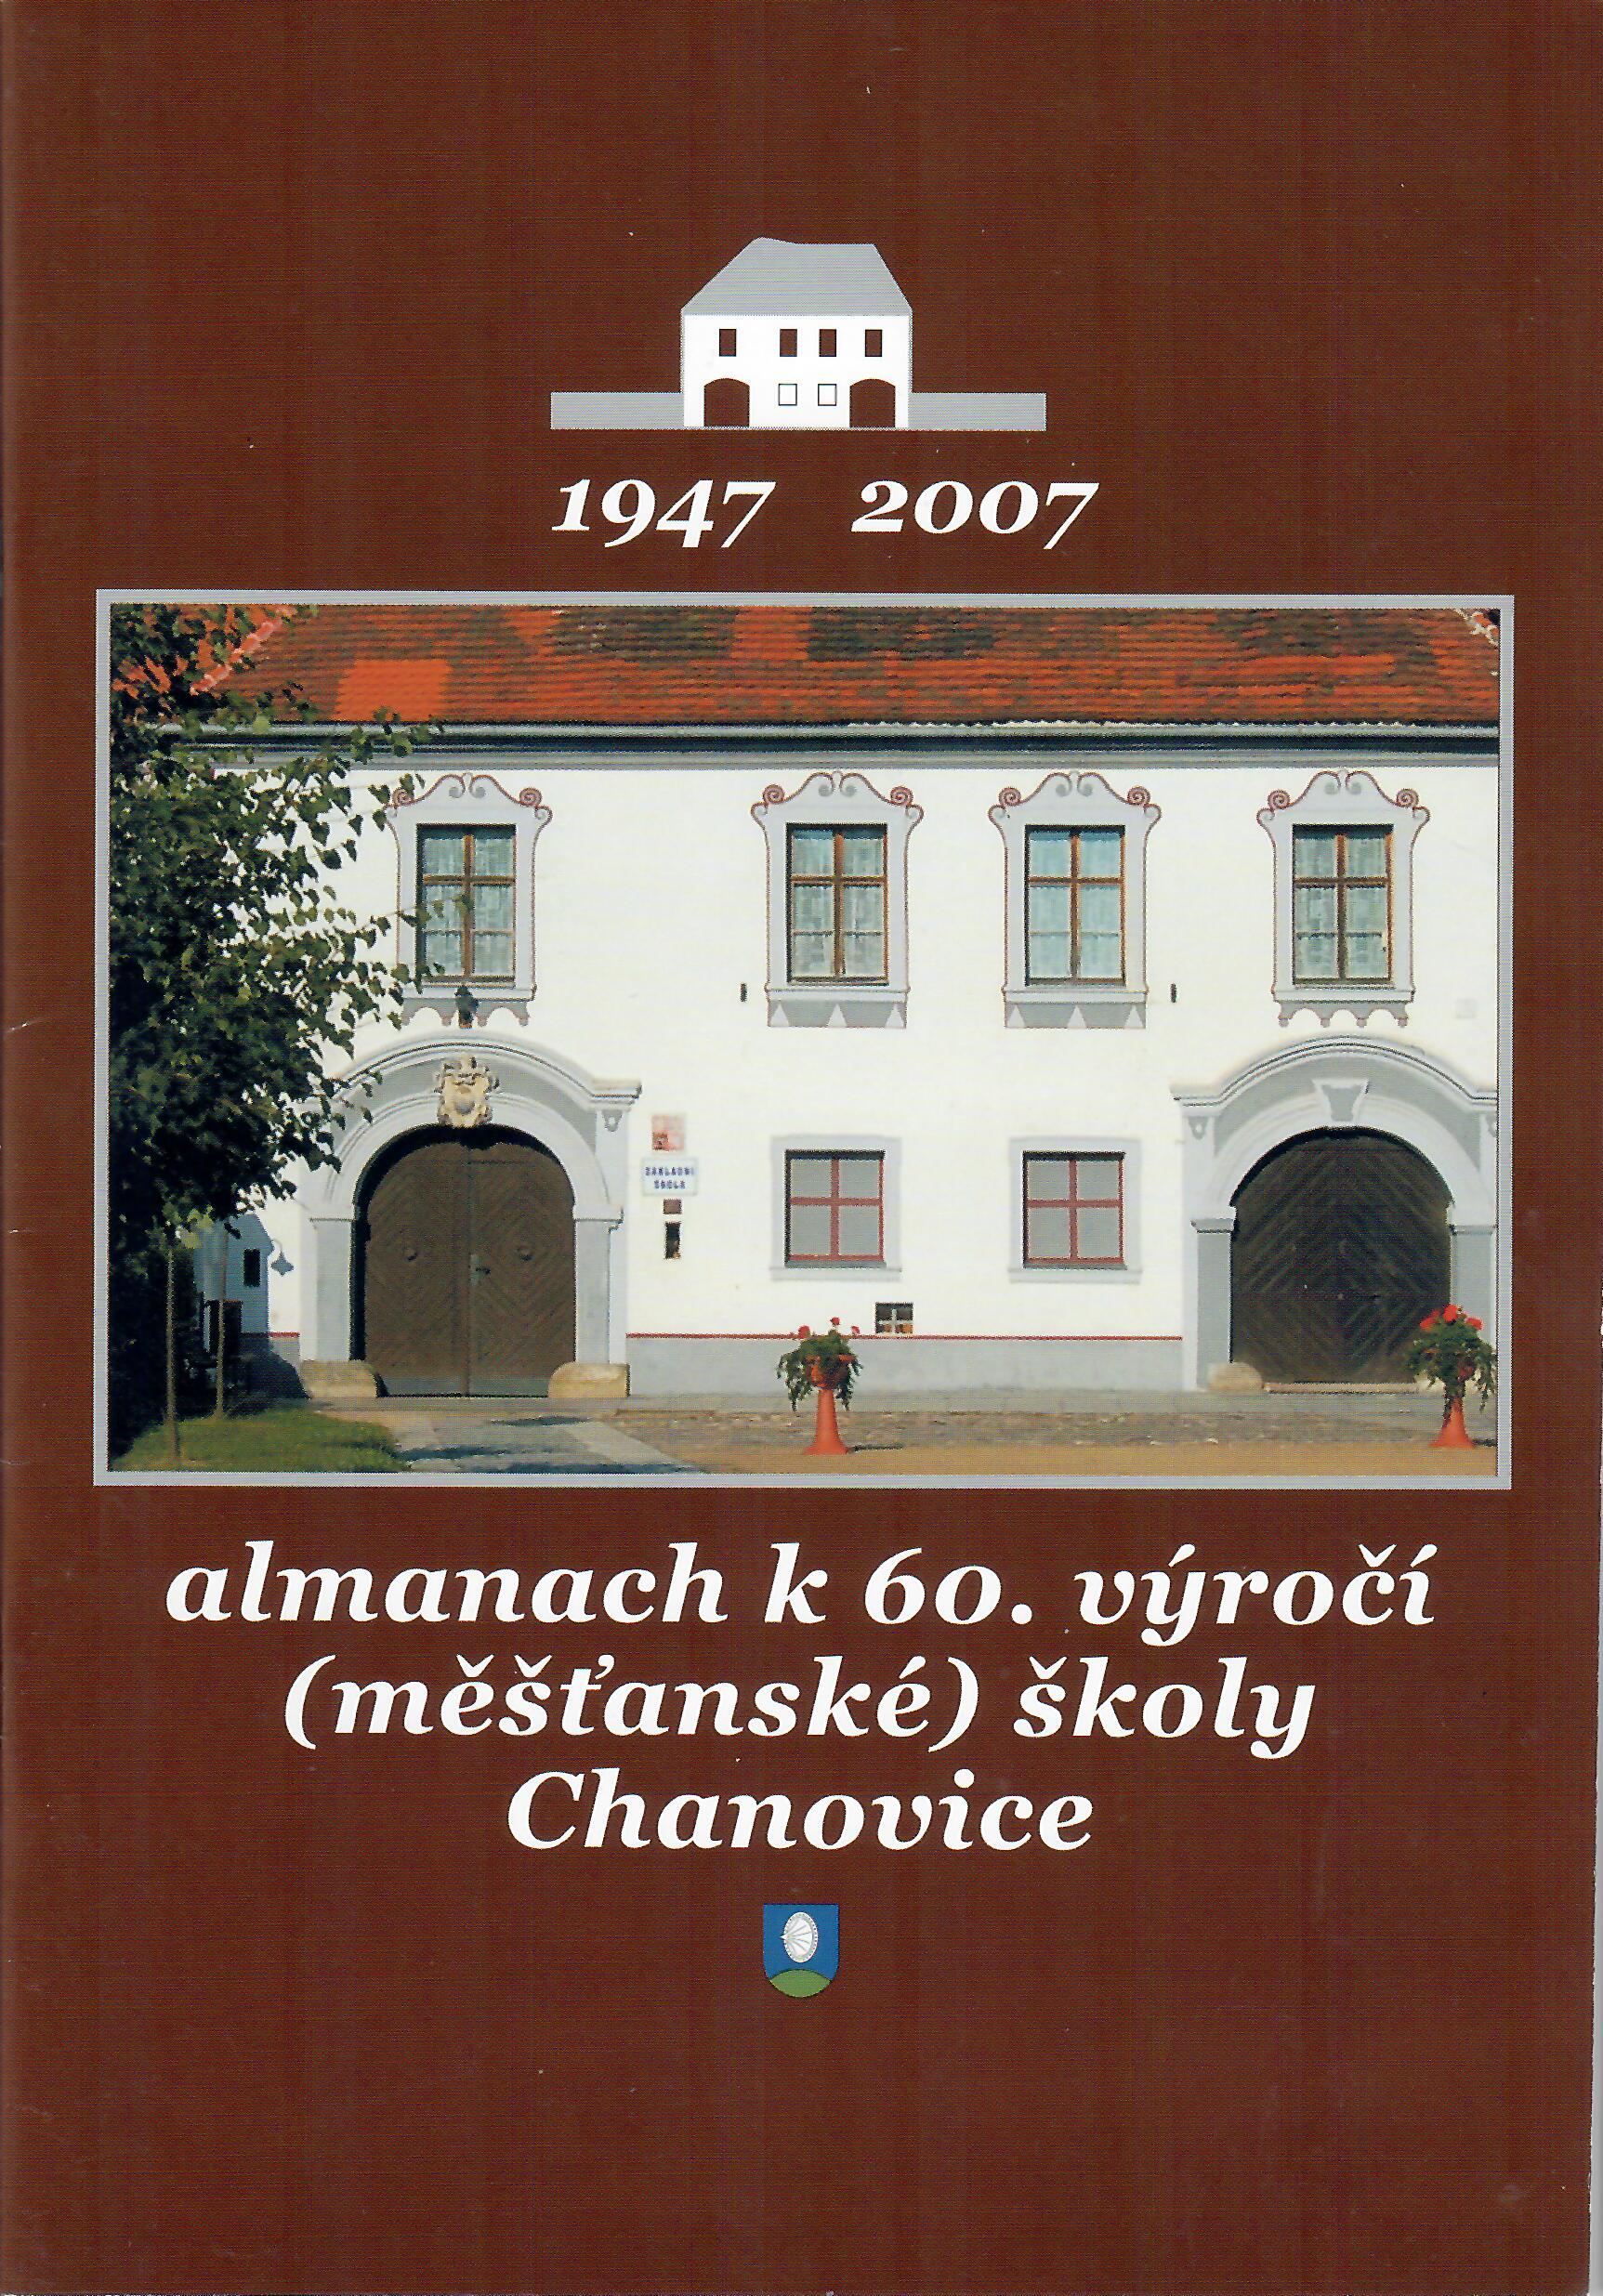 Almanach k 60. výročí založení školy